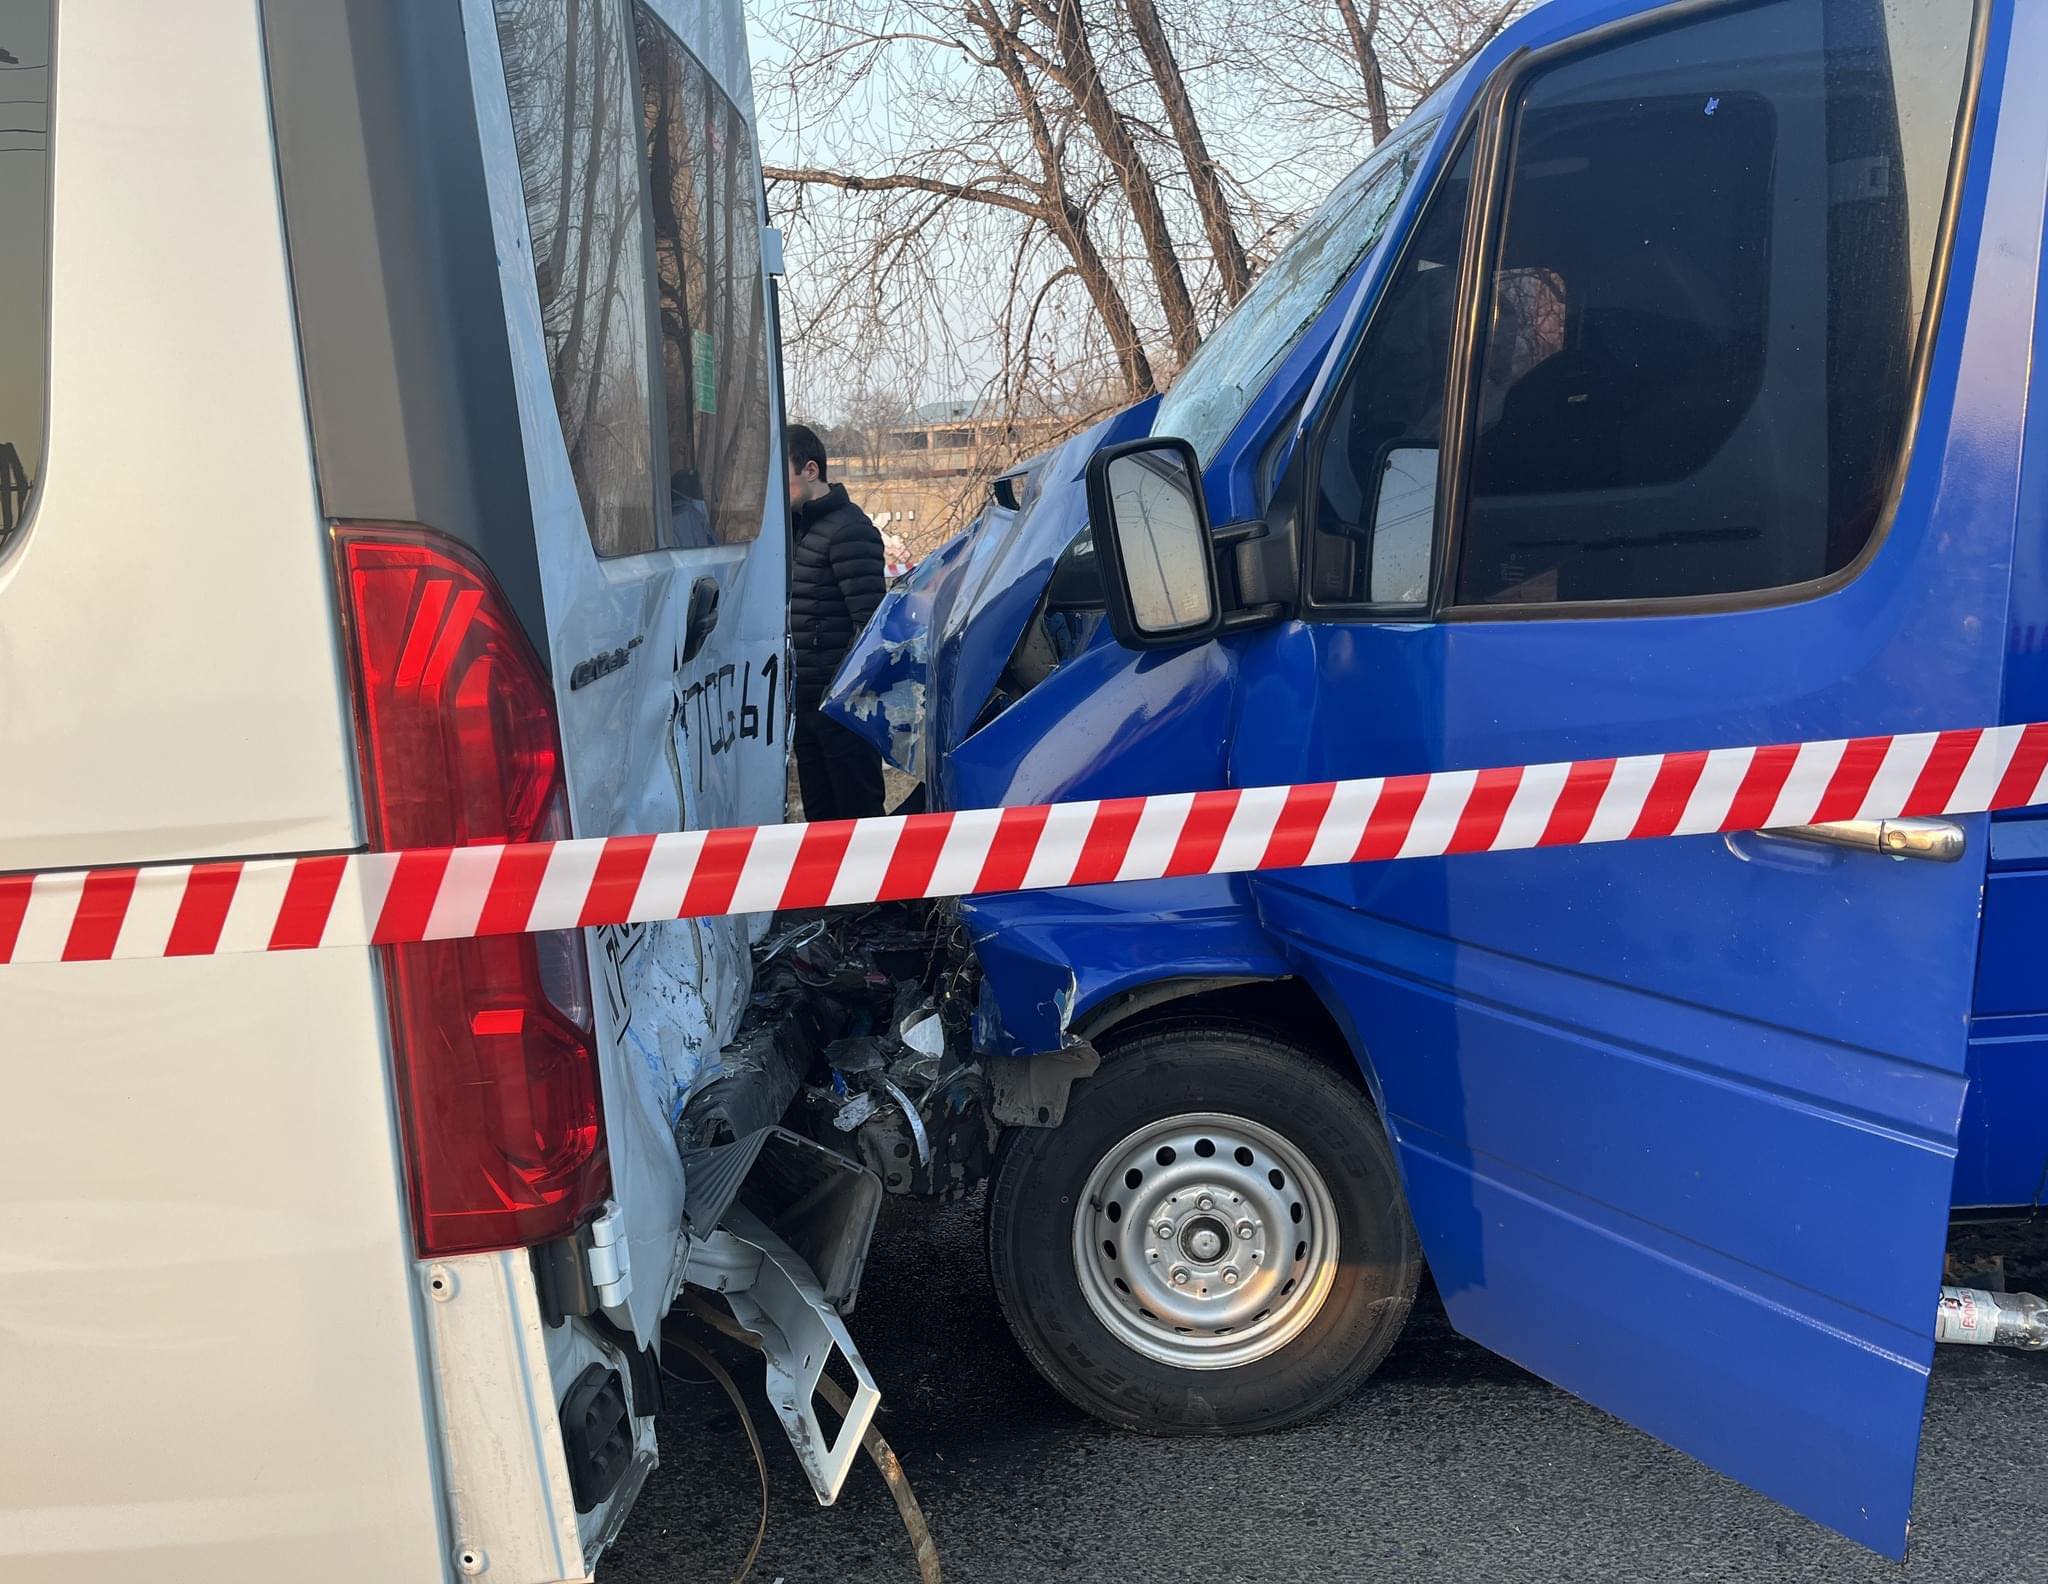 Մեկ զոհ, յոթ վիրավոր. Երևան-Արմավիր ավտոճանապարհին միմյանց են բախվել «Մերսեդես Սպրինտեր» մակնիշի և «Գազել» մակնիշի ավտոմեքենաները